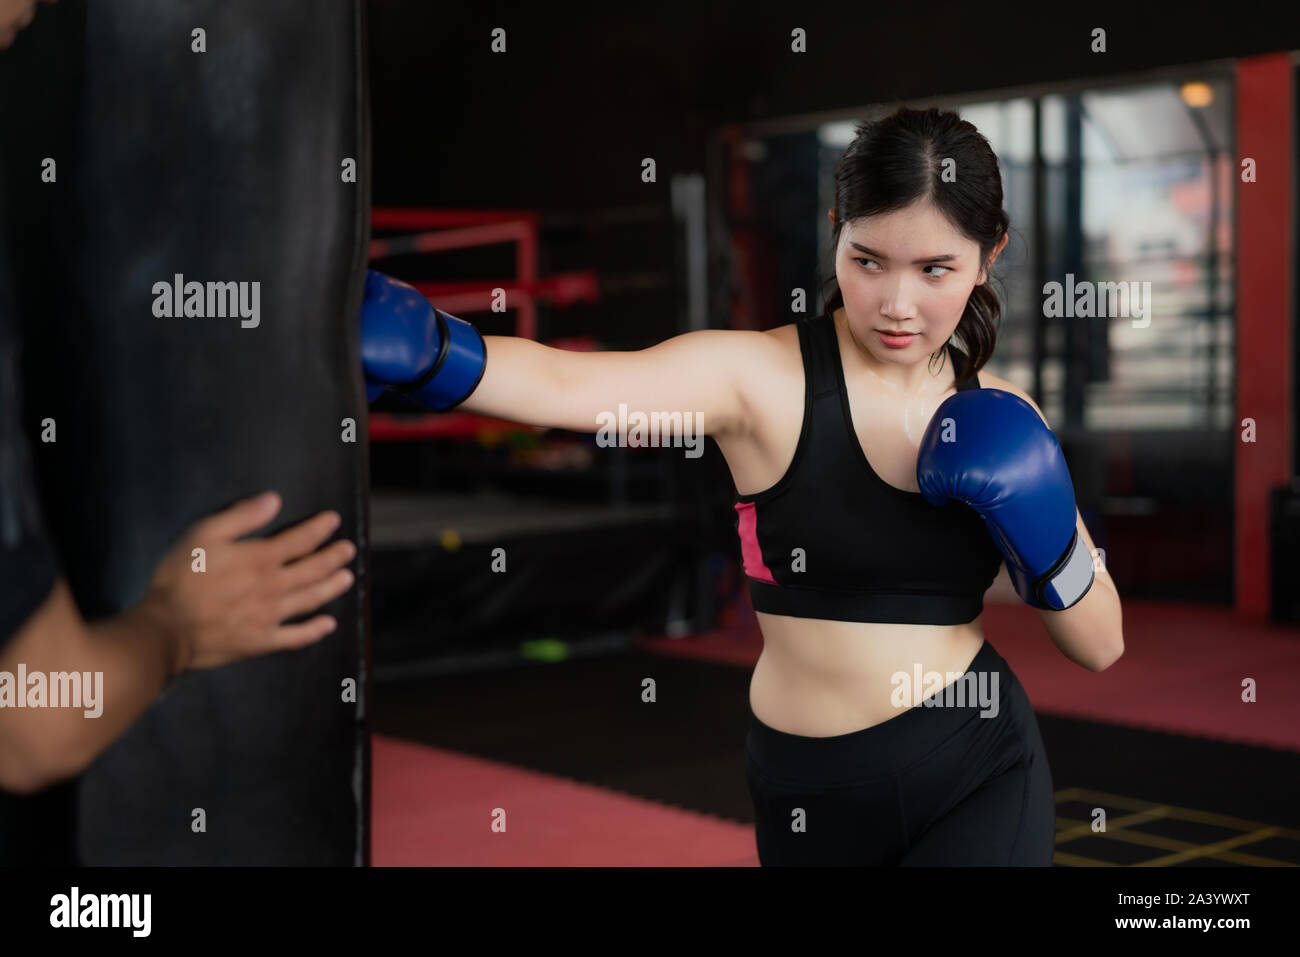 Portrait de jeune femme asiatique confiant boxer bleu avec des gants de boxe, un sac de frappe avec formateur dans professioal de sport. Pour mettre en place sportive lifestyl sain Banque D'Images